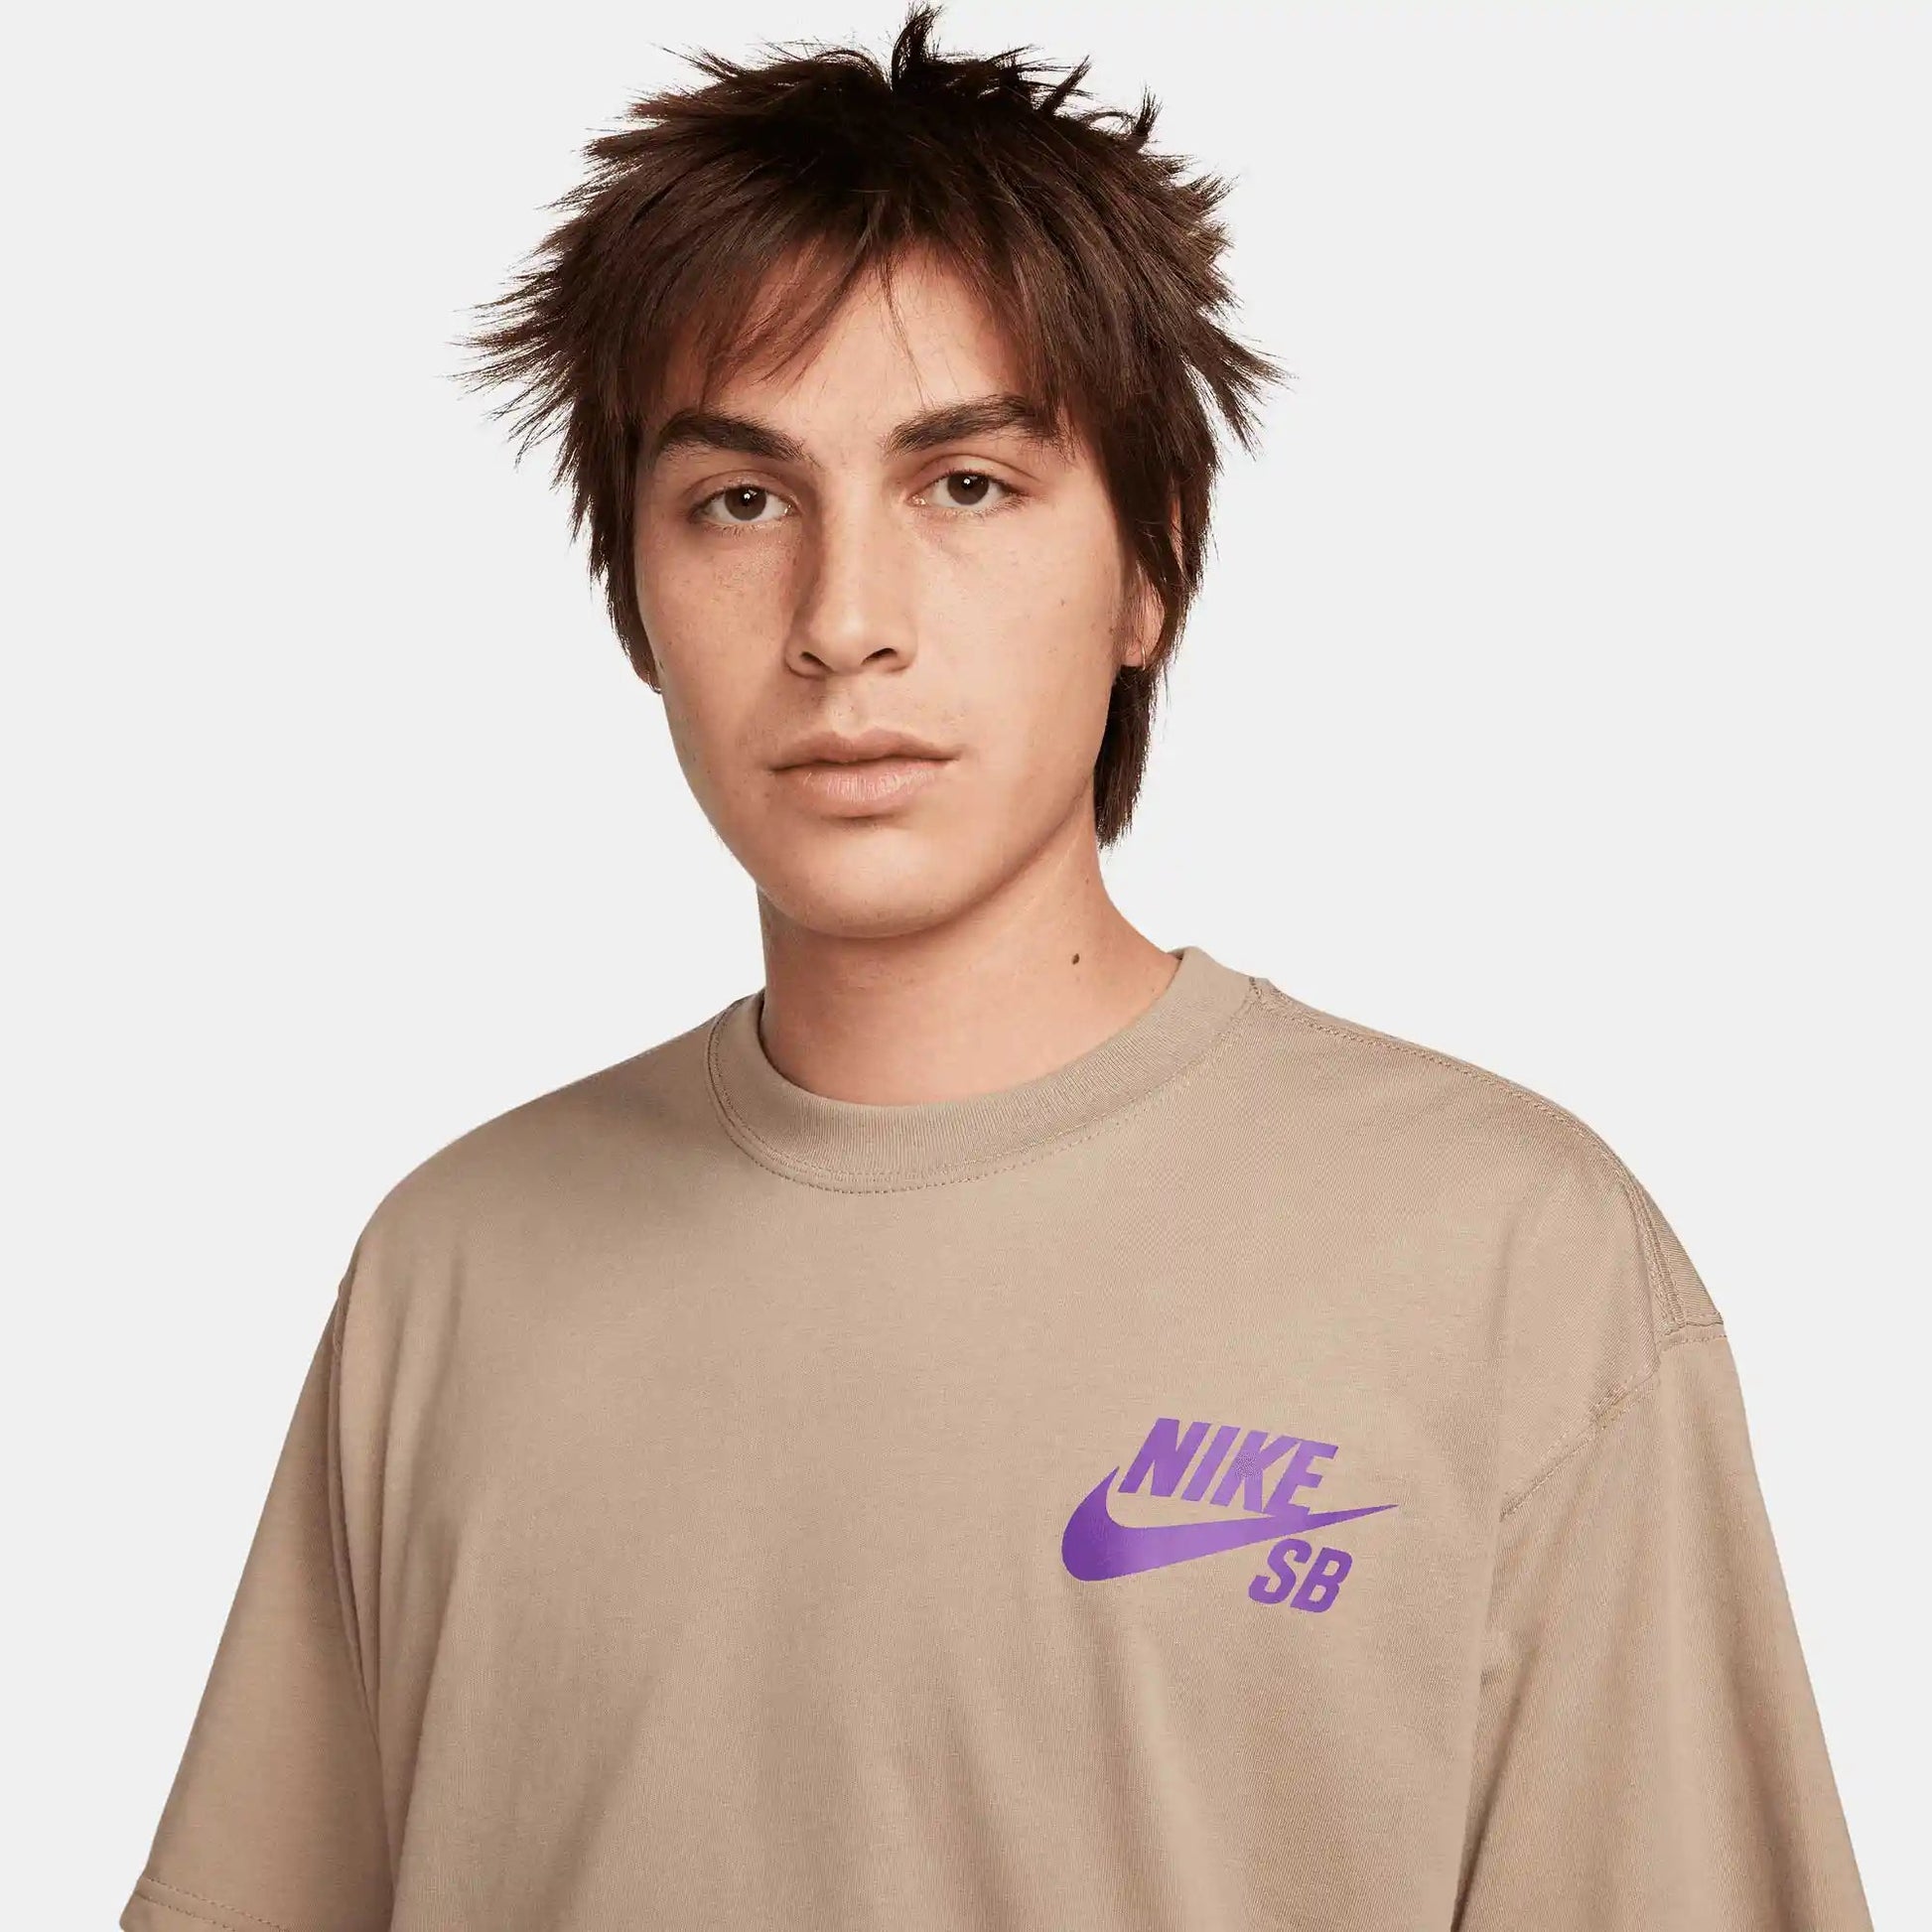 Nike SB Logo Skate T-Shirt, khaki - Tiki Room Skateboards - 2